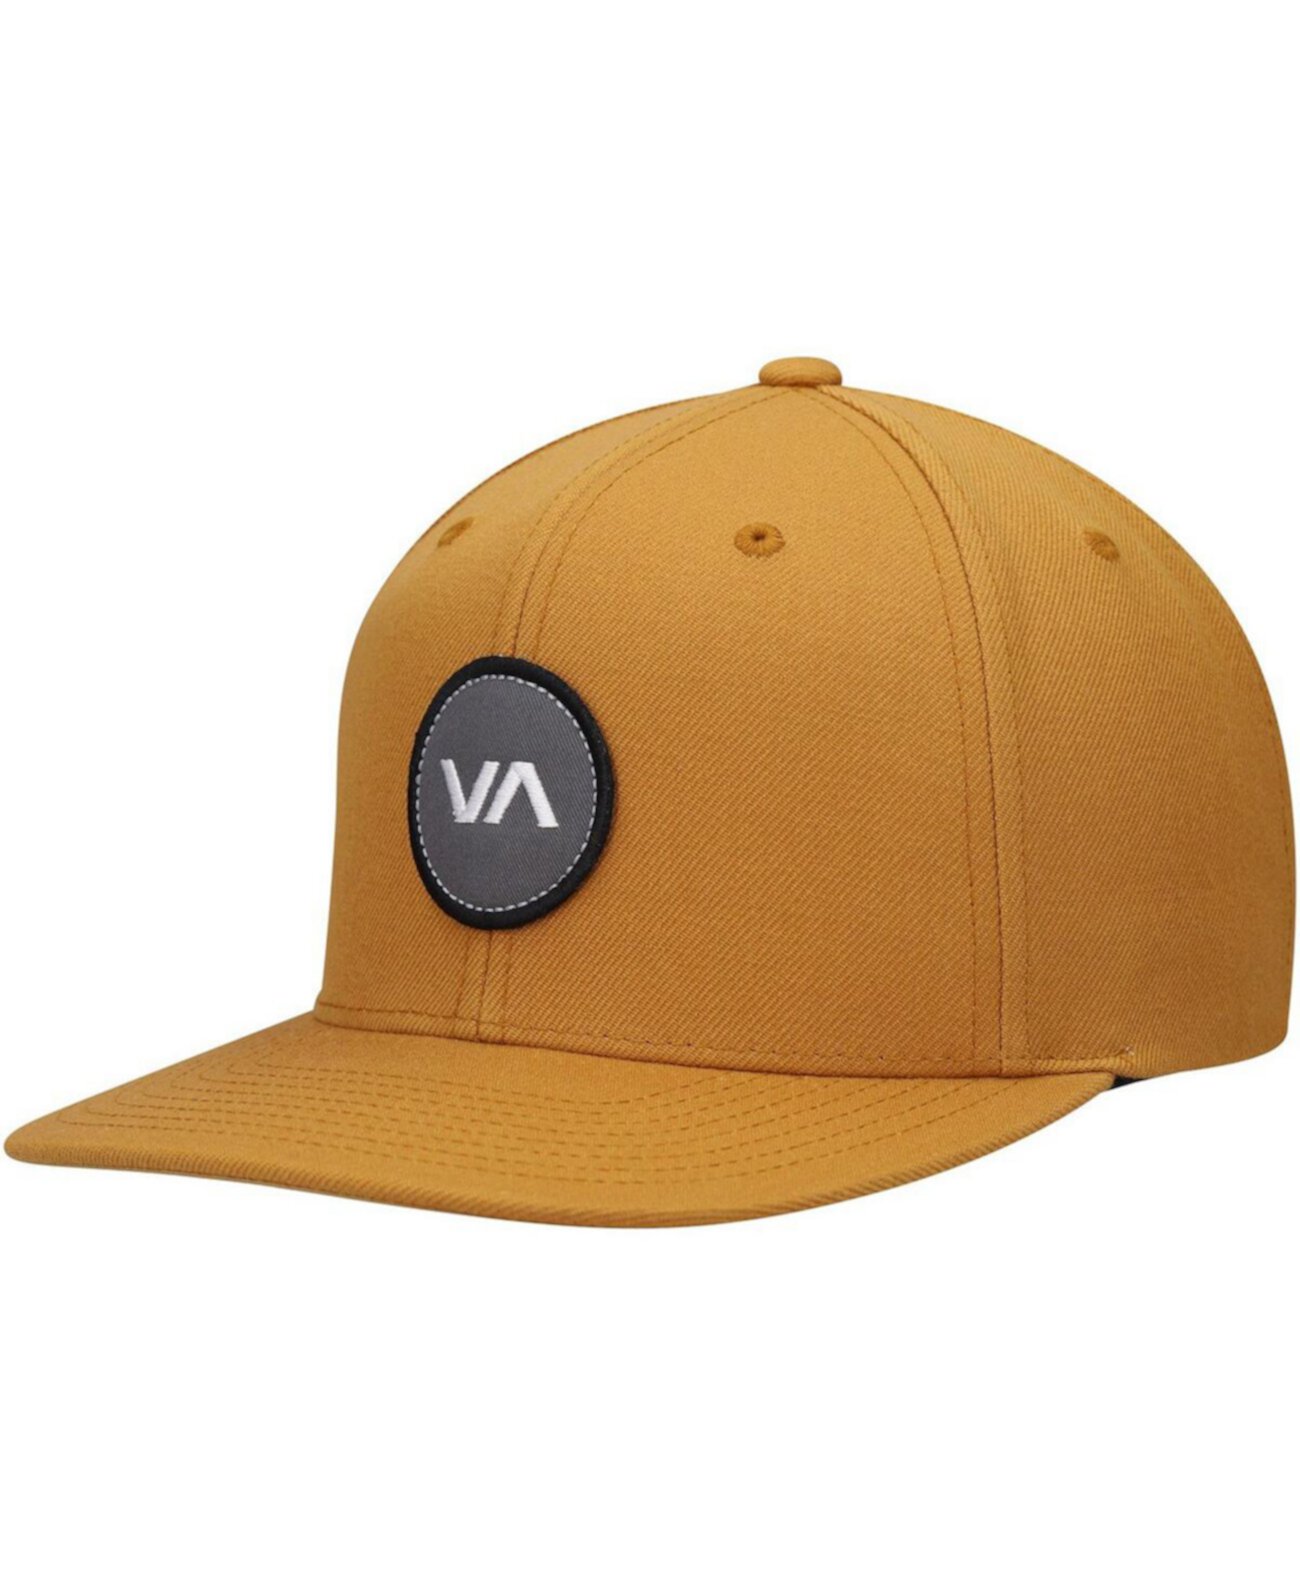 Men's Gold VA Patch Snapback Hat RVCA